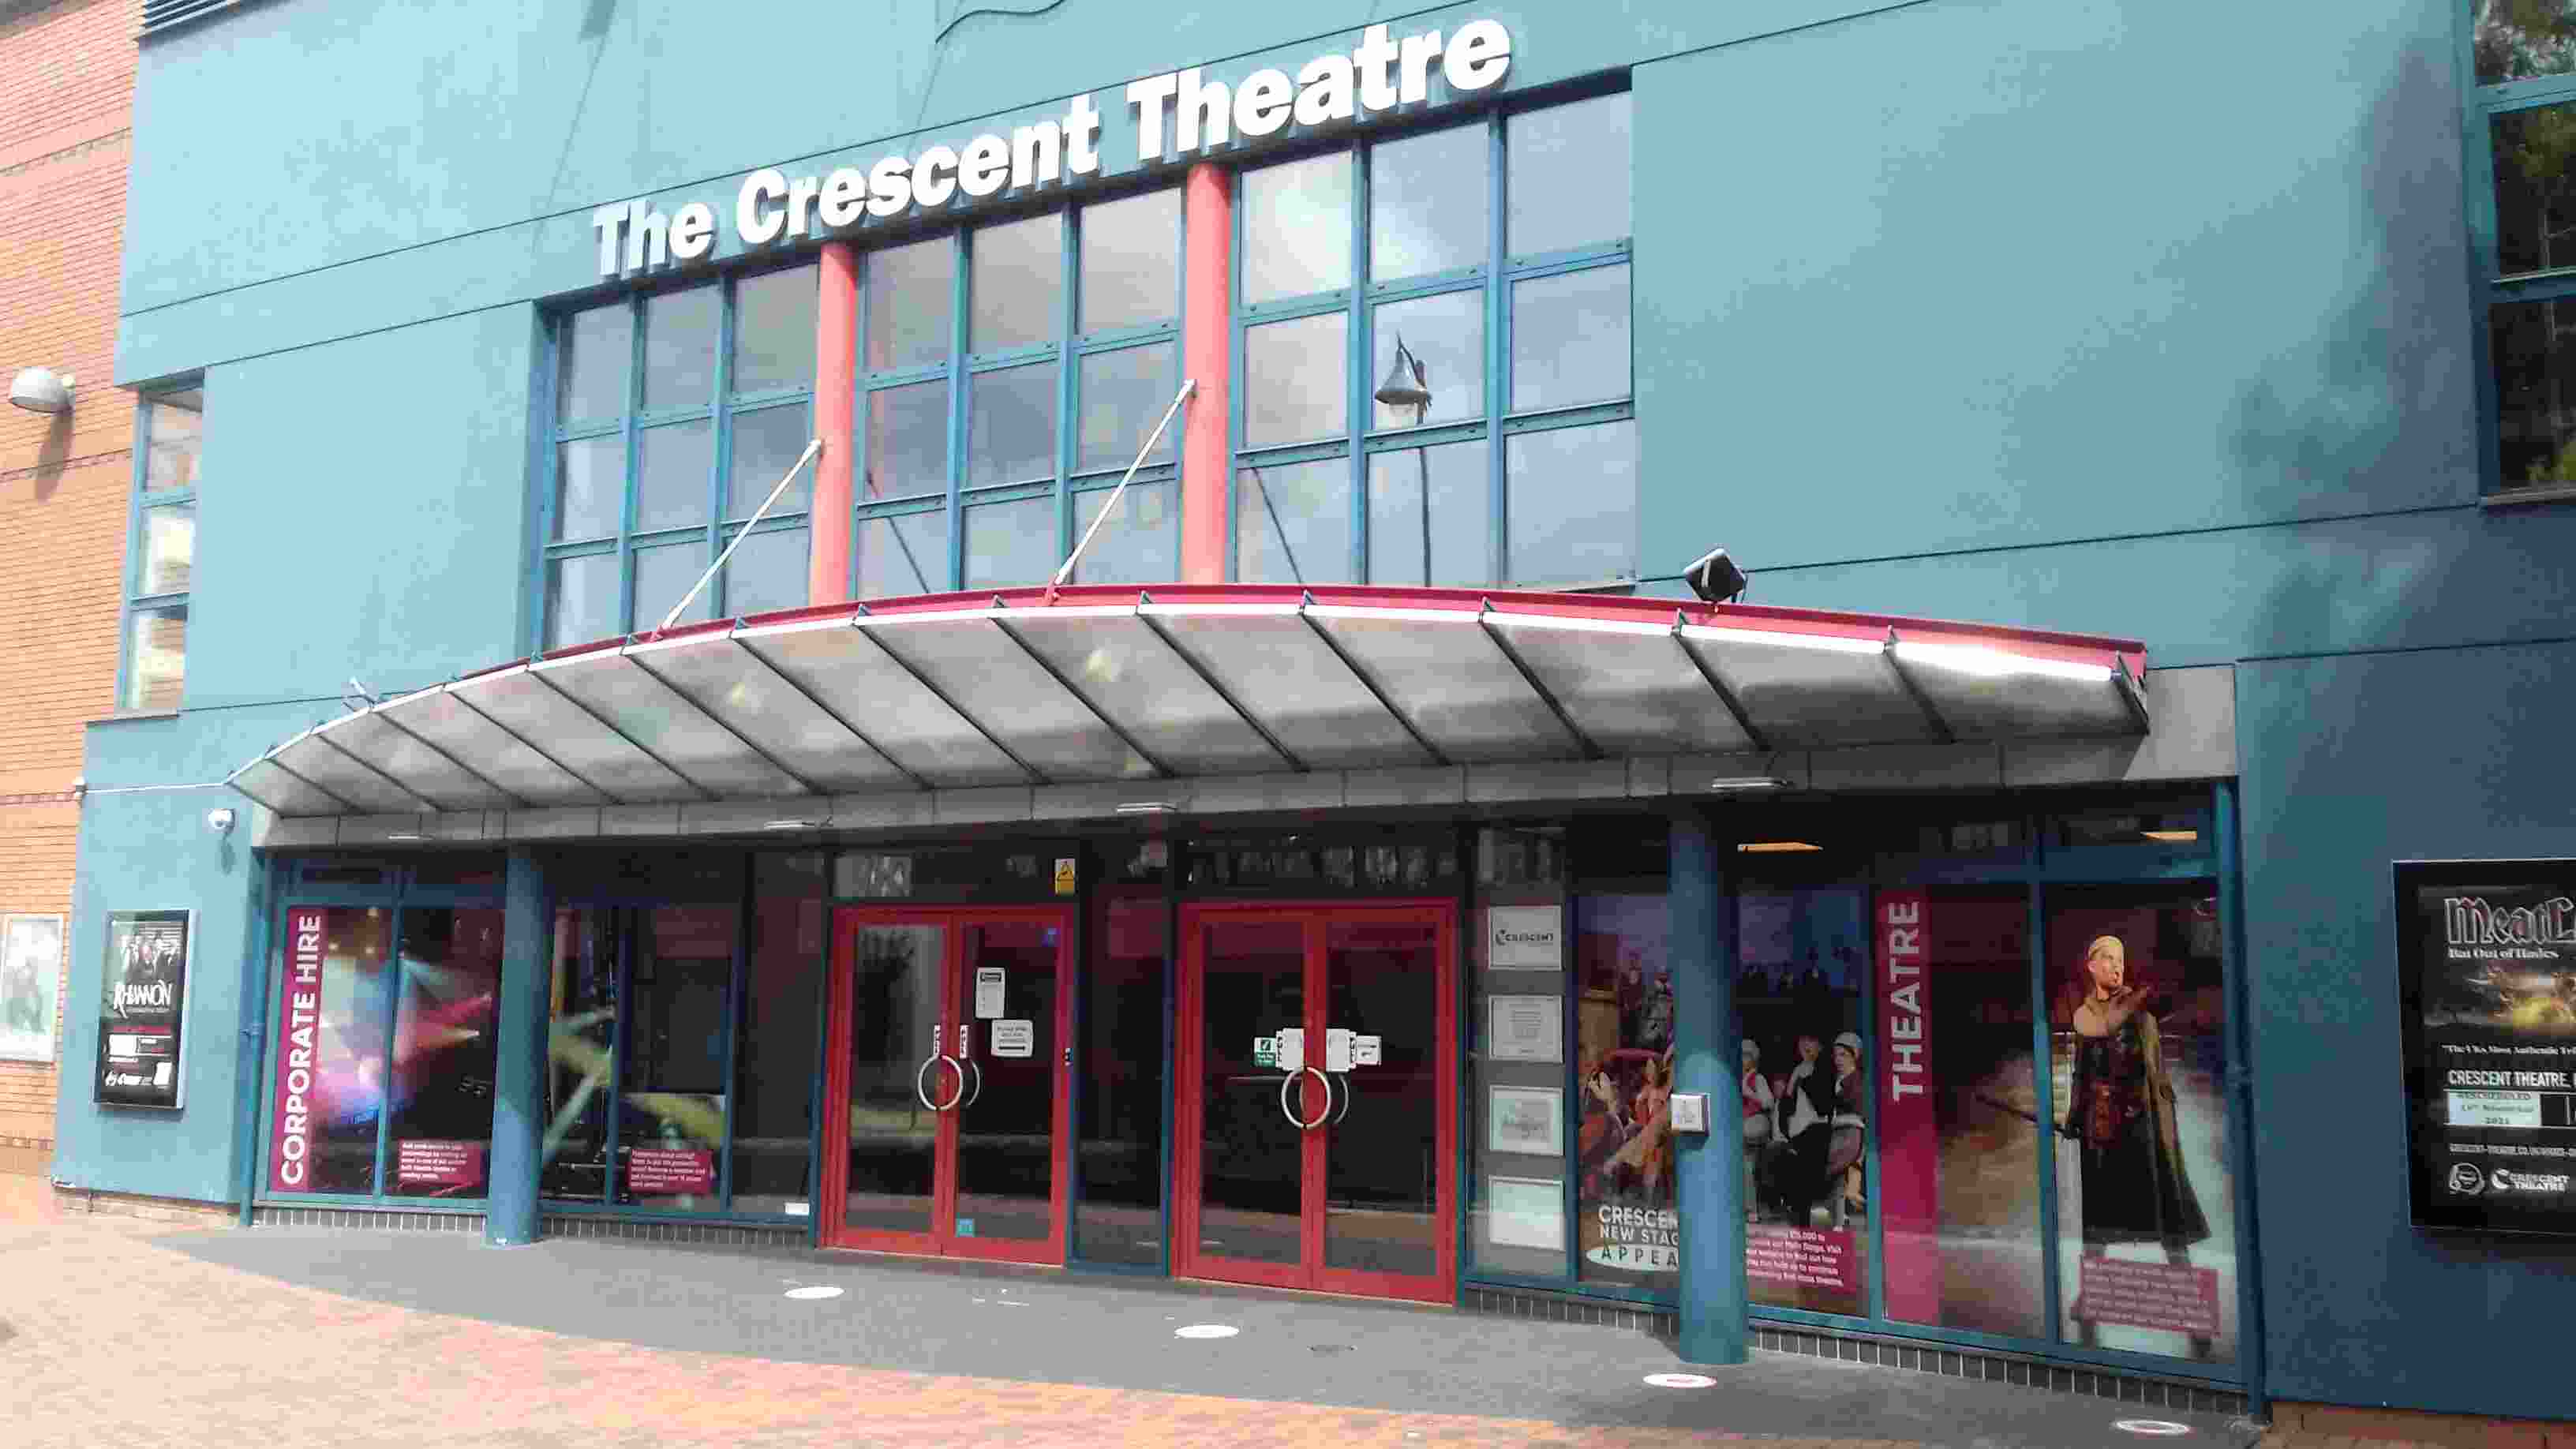 ImagesBirmingham/Birmingham Theatre Crescent Theatre.jpg